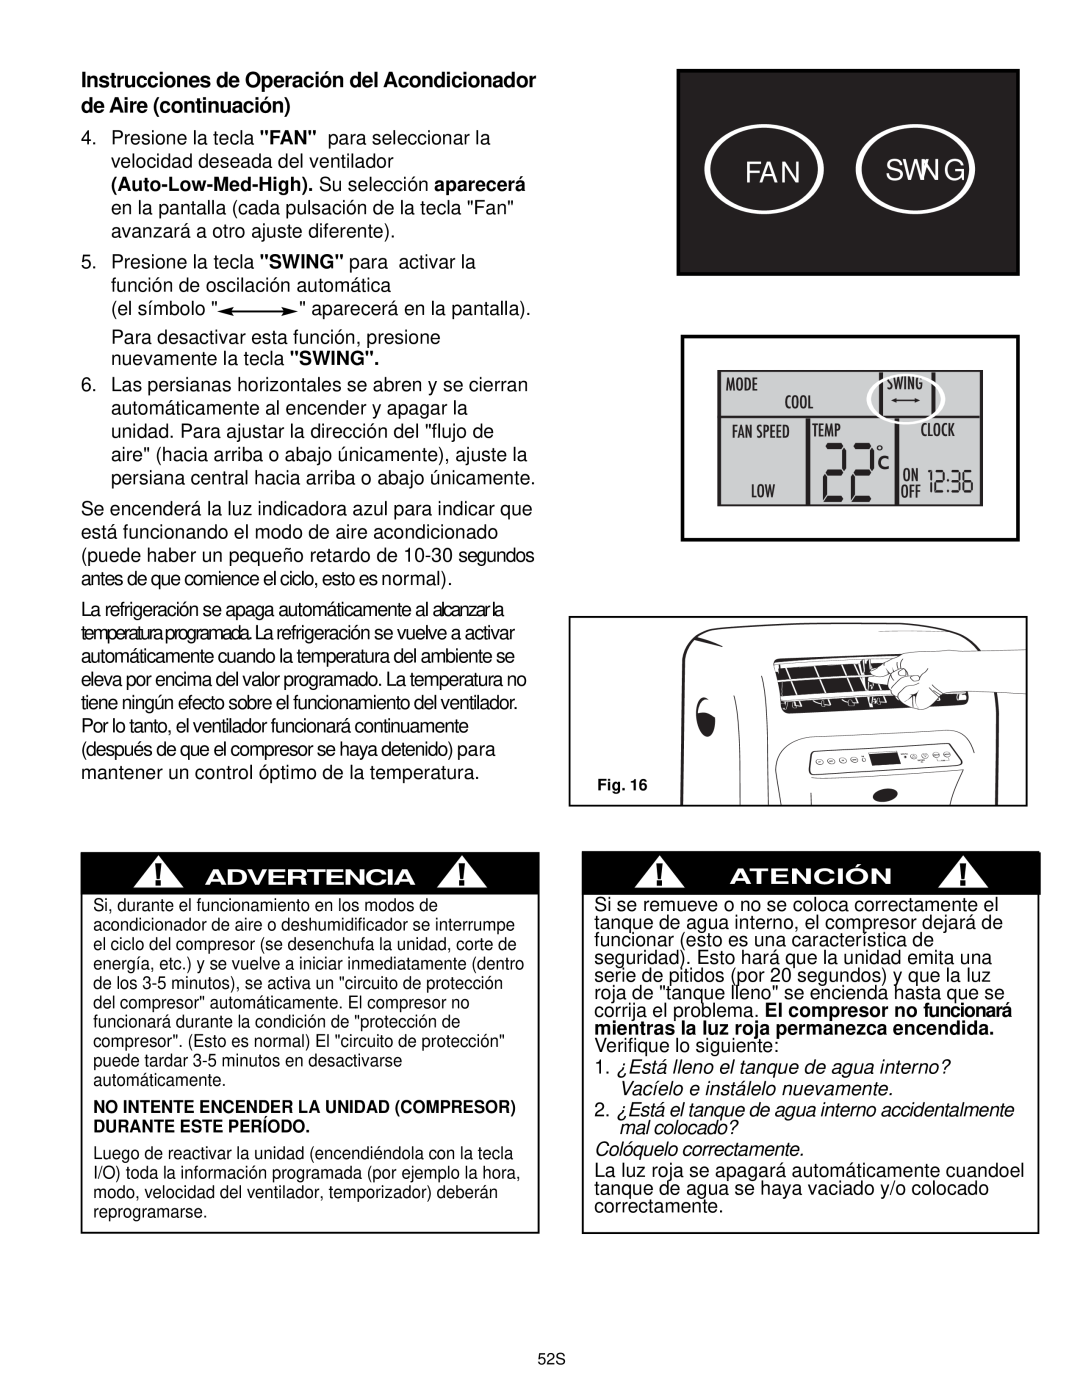 Danby DPAC10030 Instrucciones de Operación del Acondicionador de Aire continuación, Atención, Colóquelo correctamente 